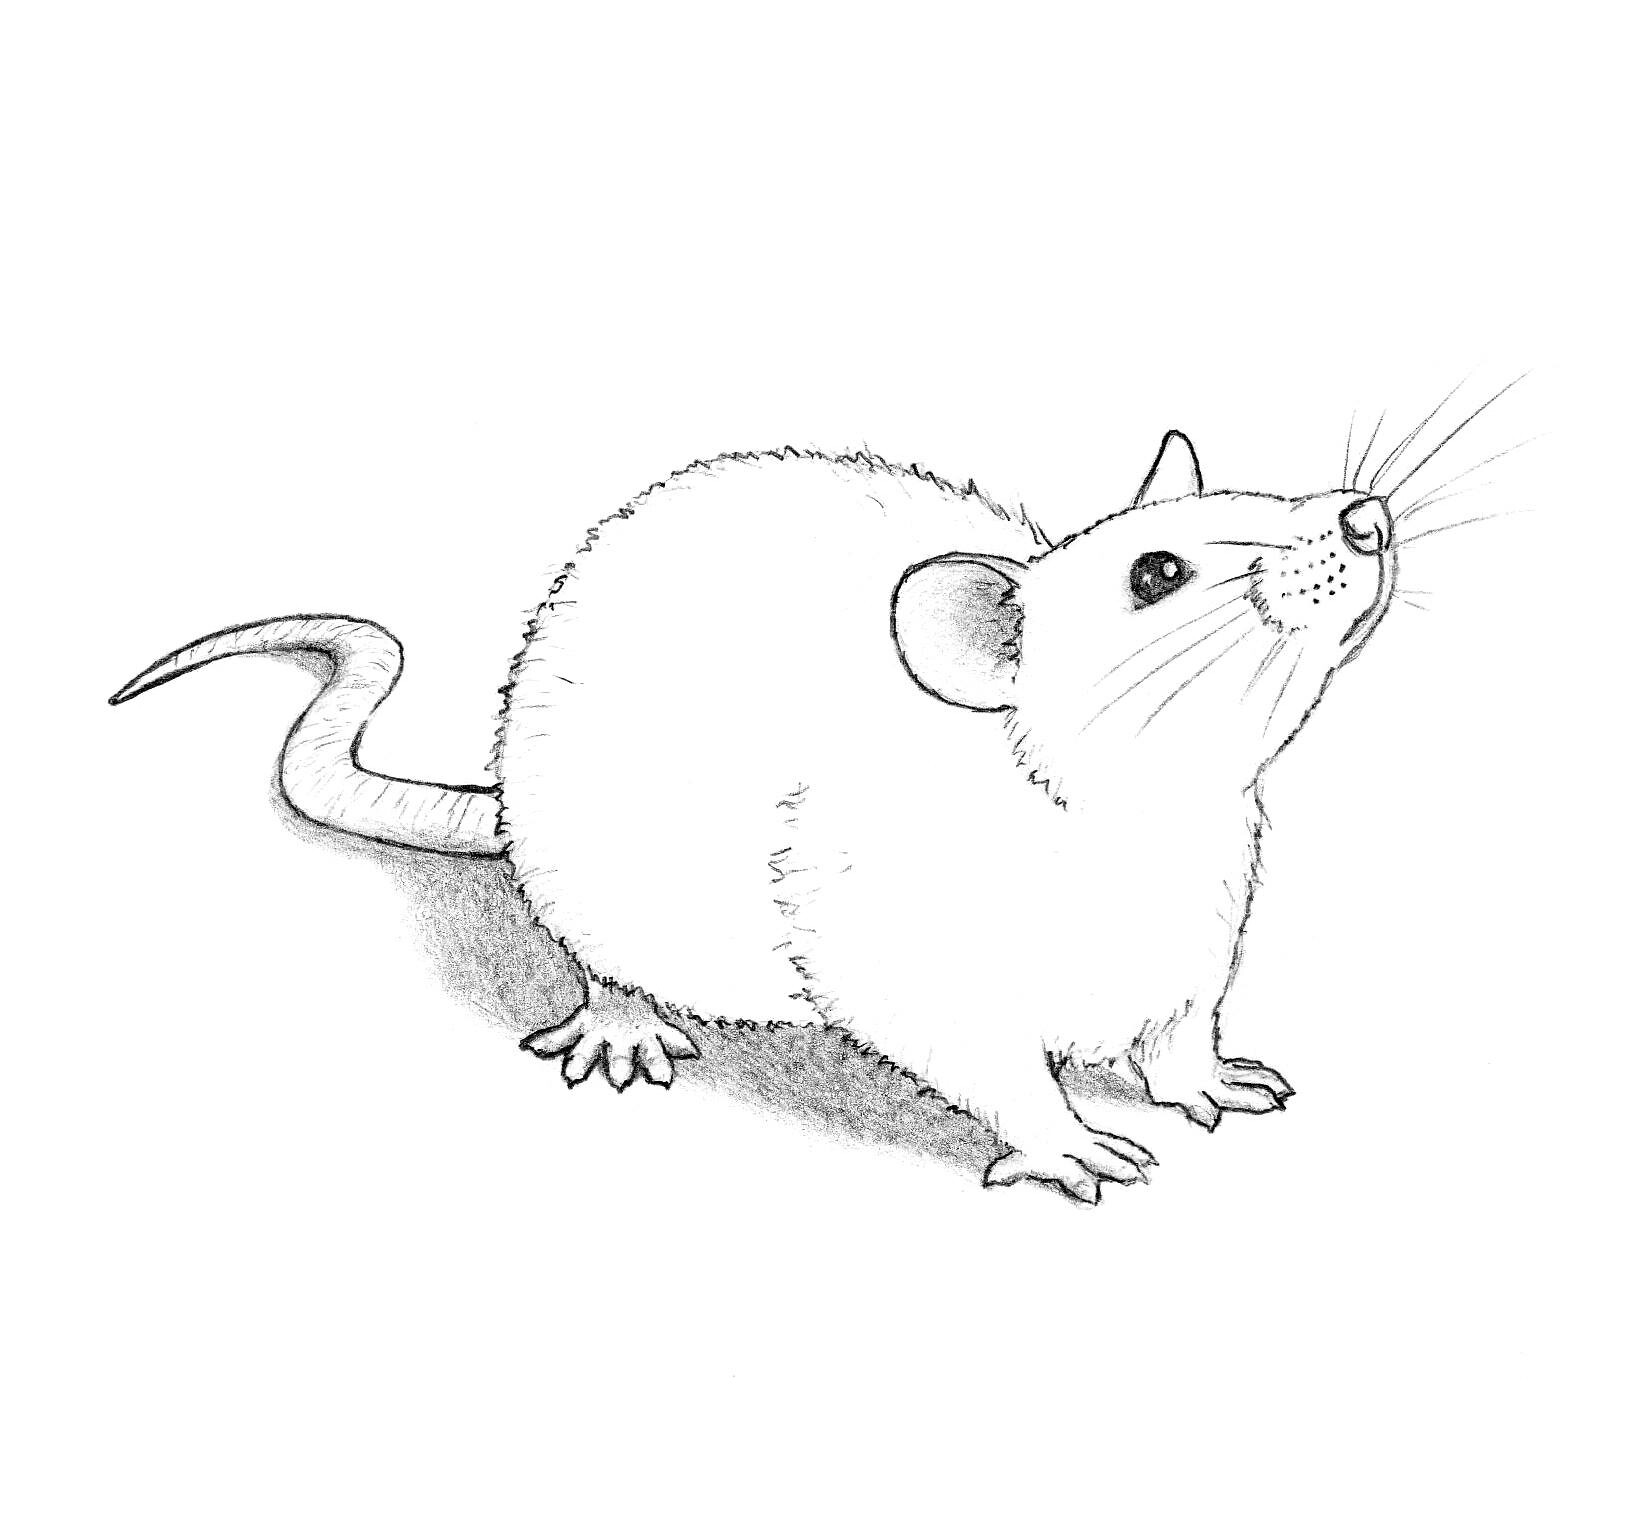 ArtStation - Rat Sketch